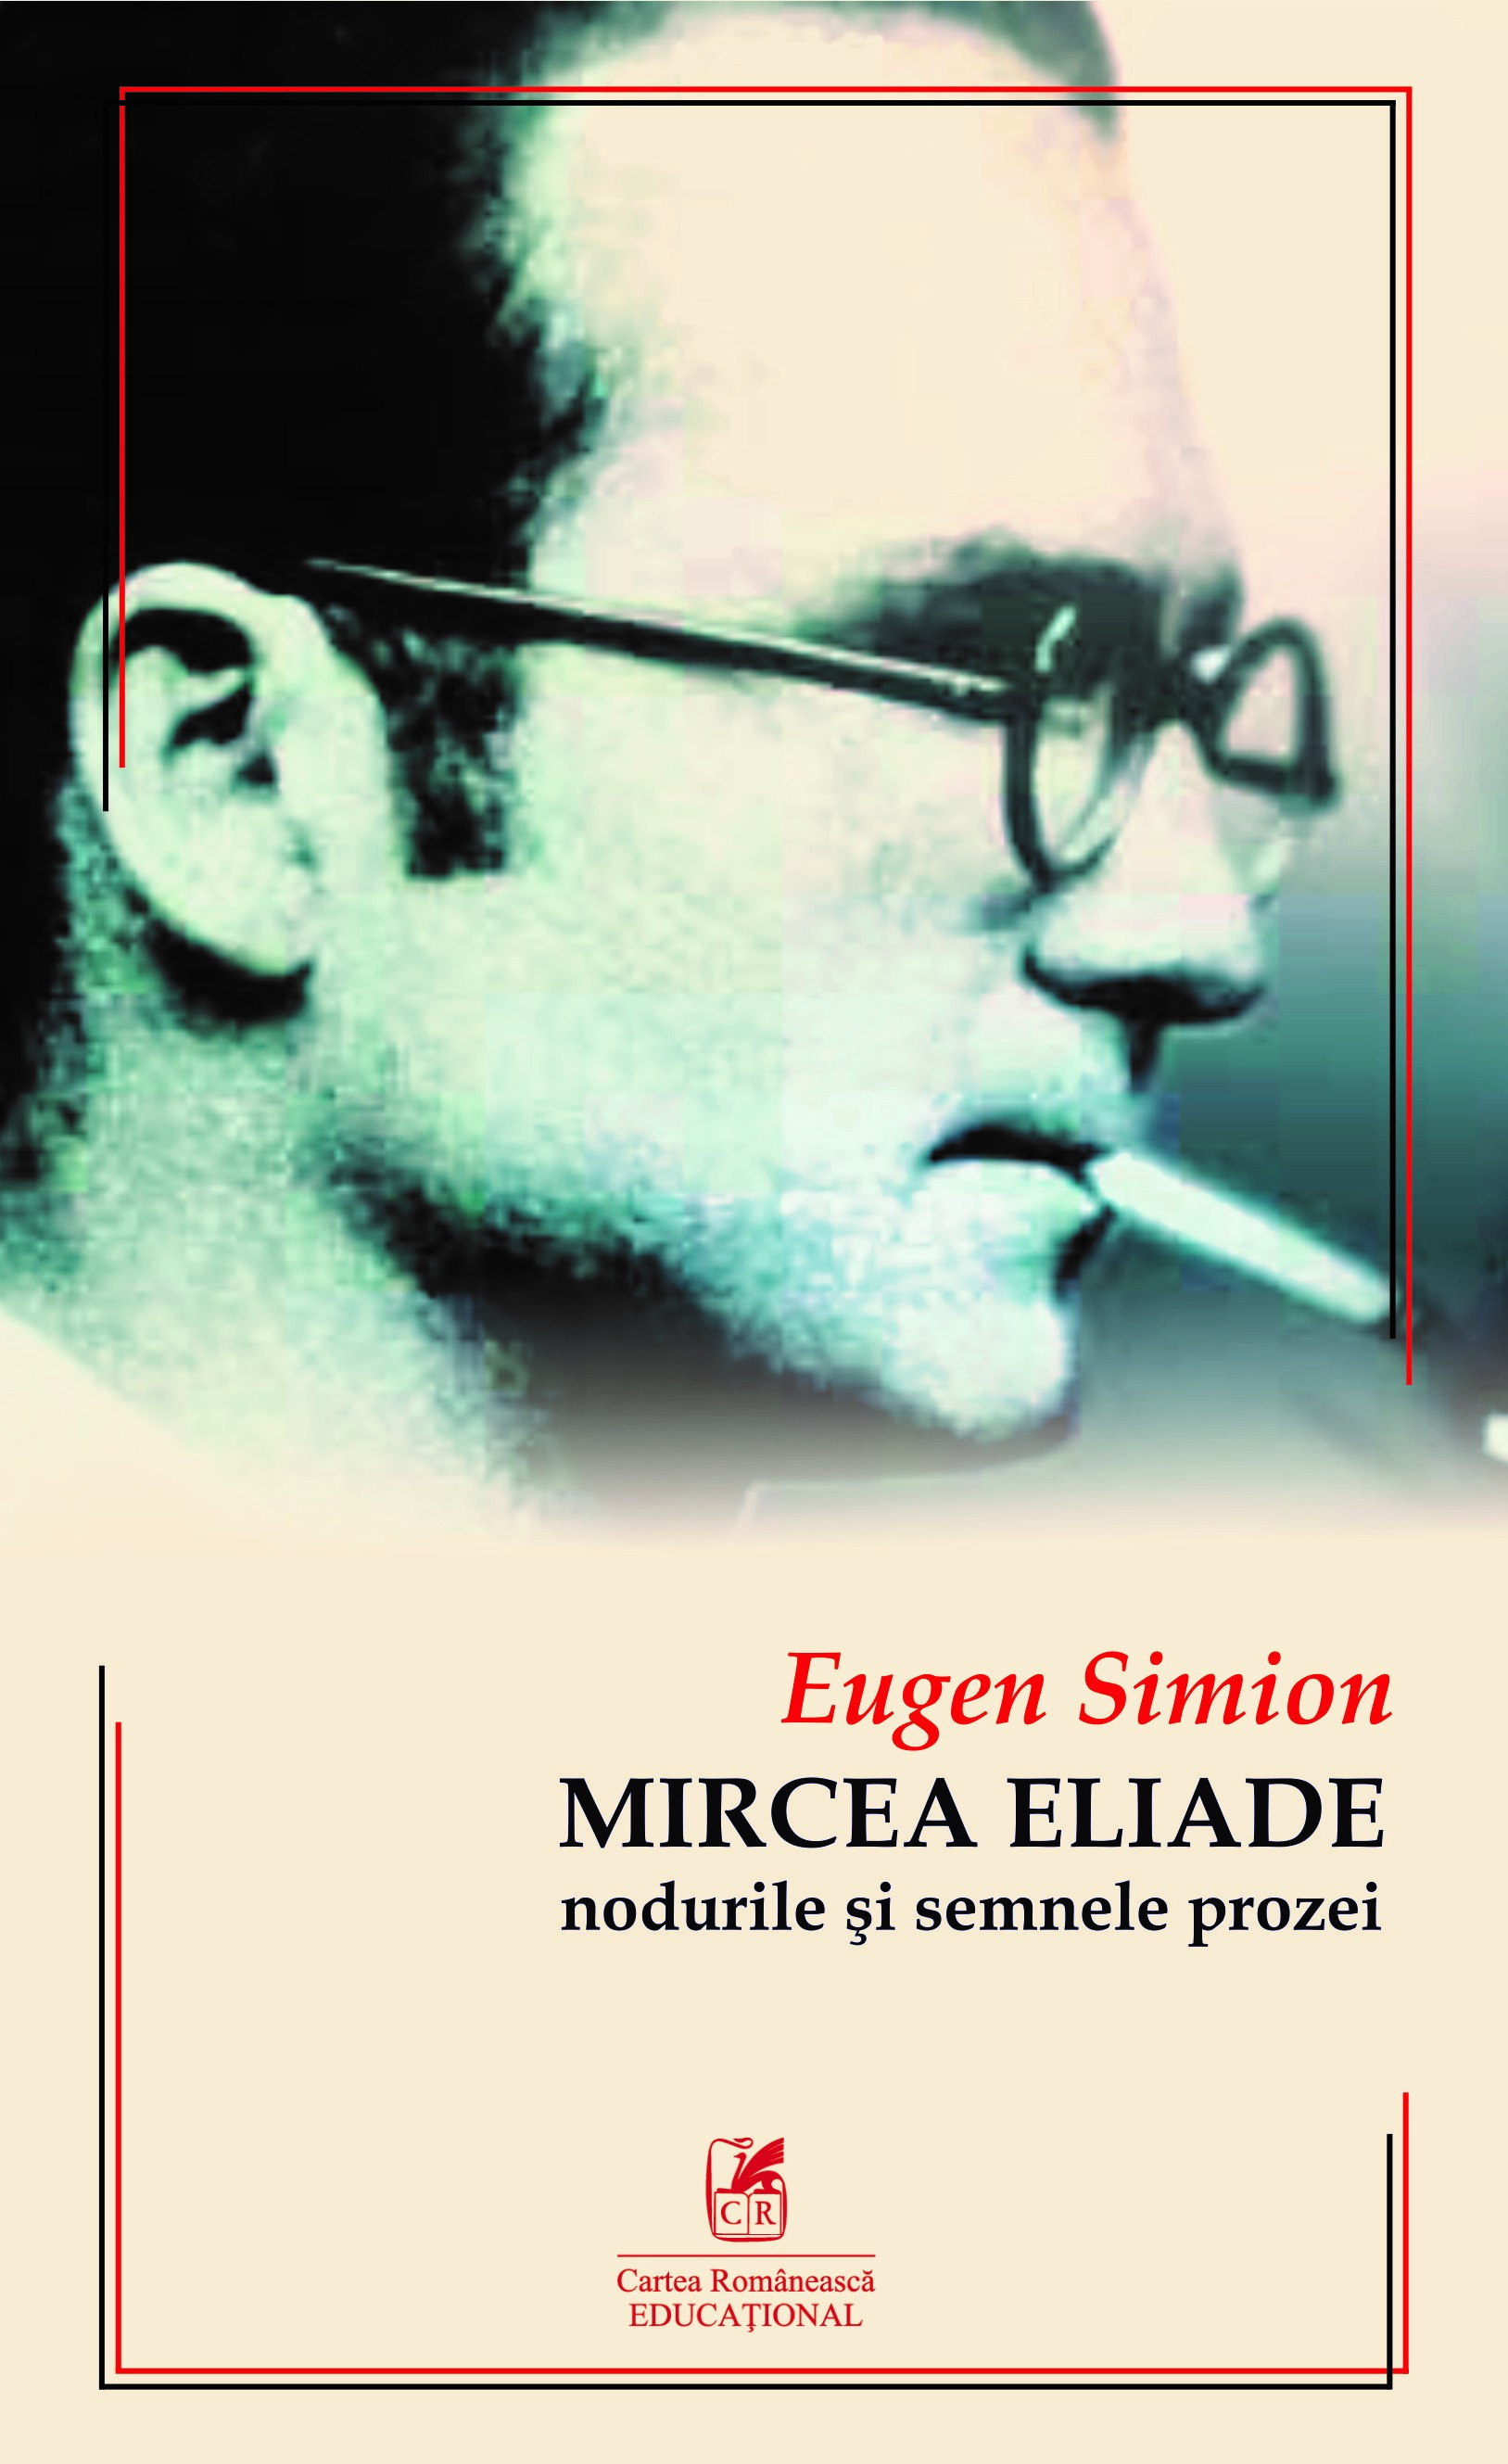 Mircea Eliade – Nodurile si semnele prozei | Eugen Simion Carte Romaneasca Educational Carte